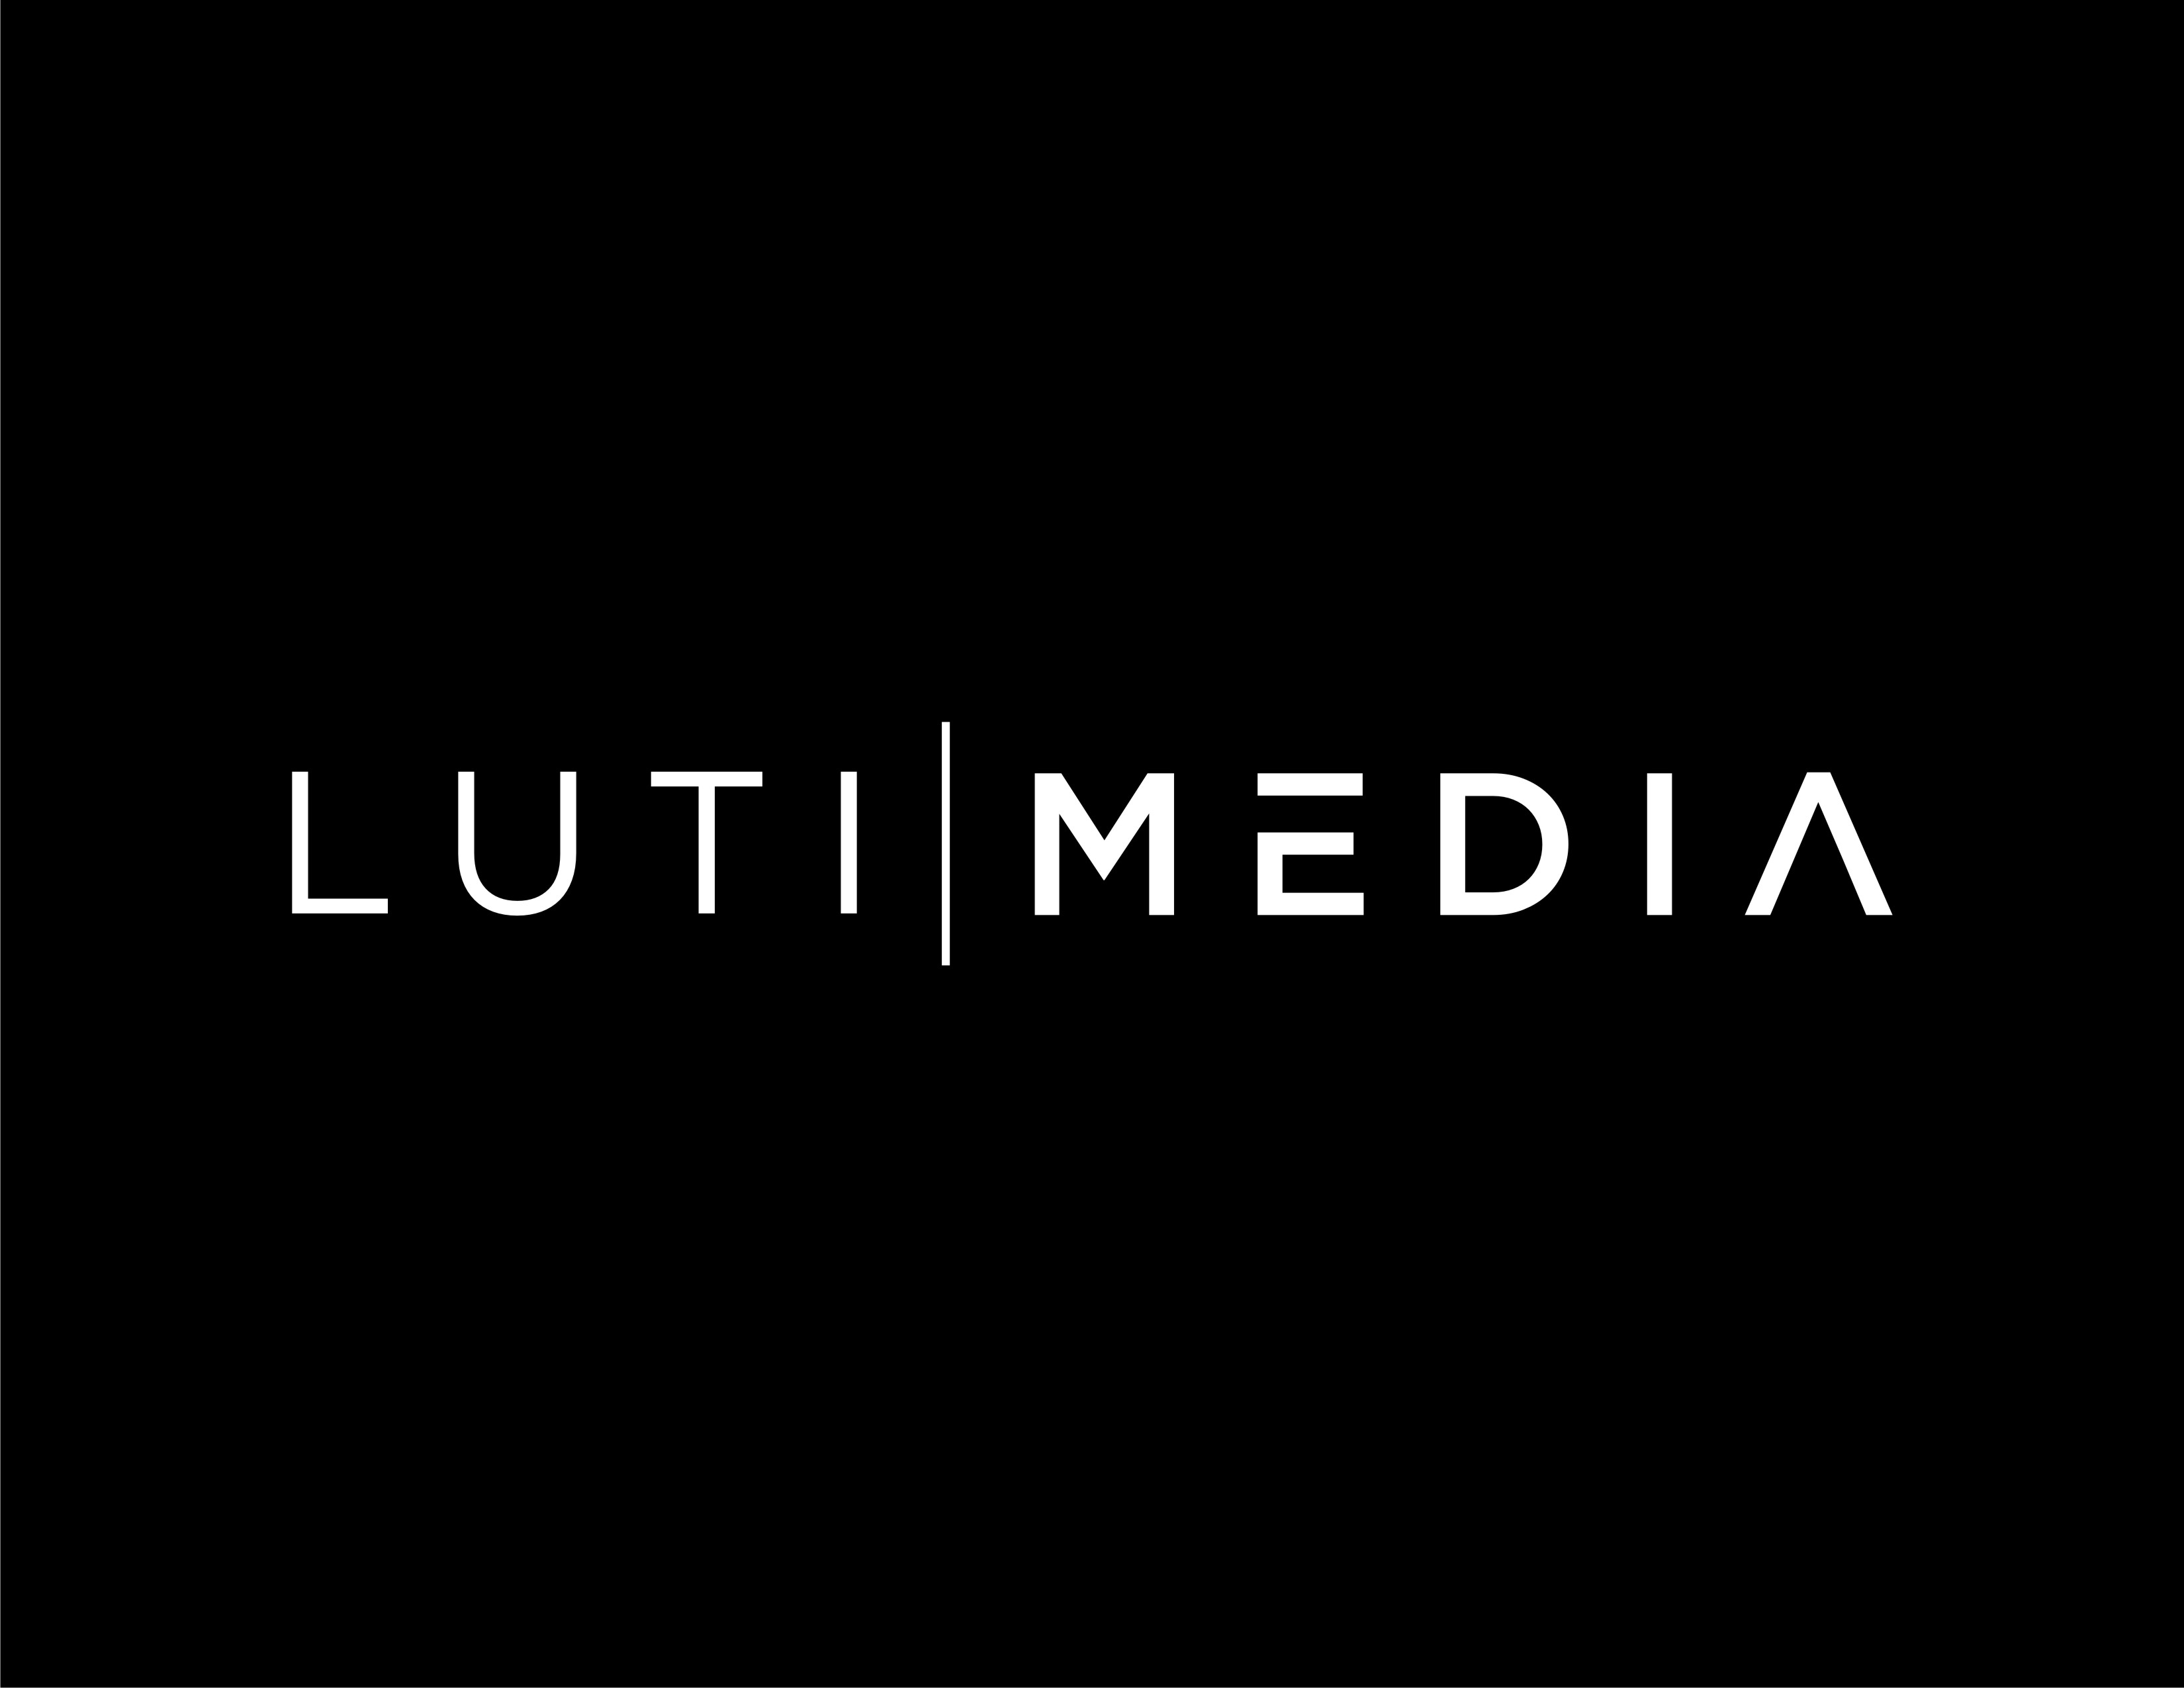 Luti Media